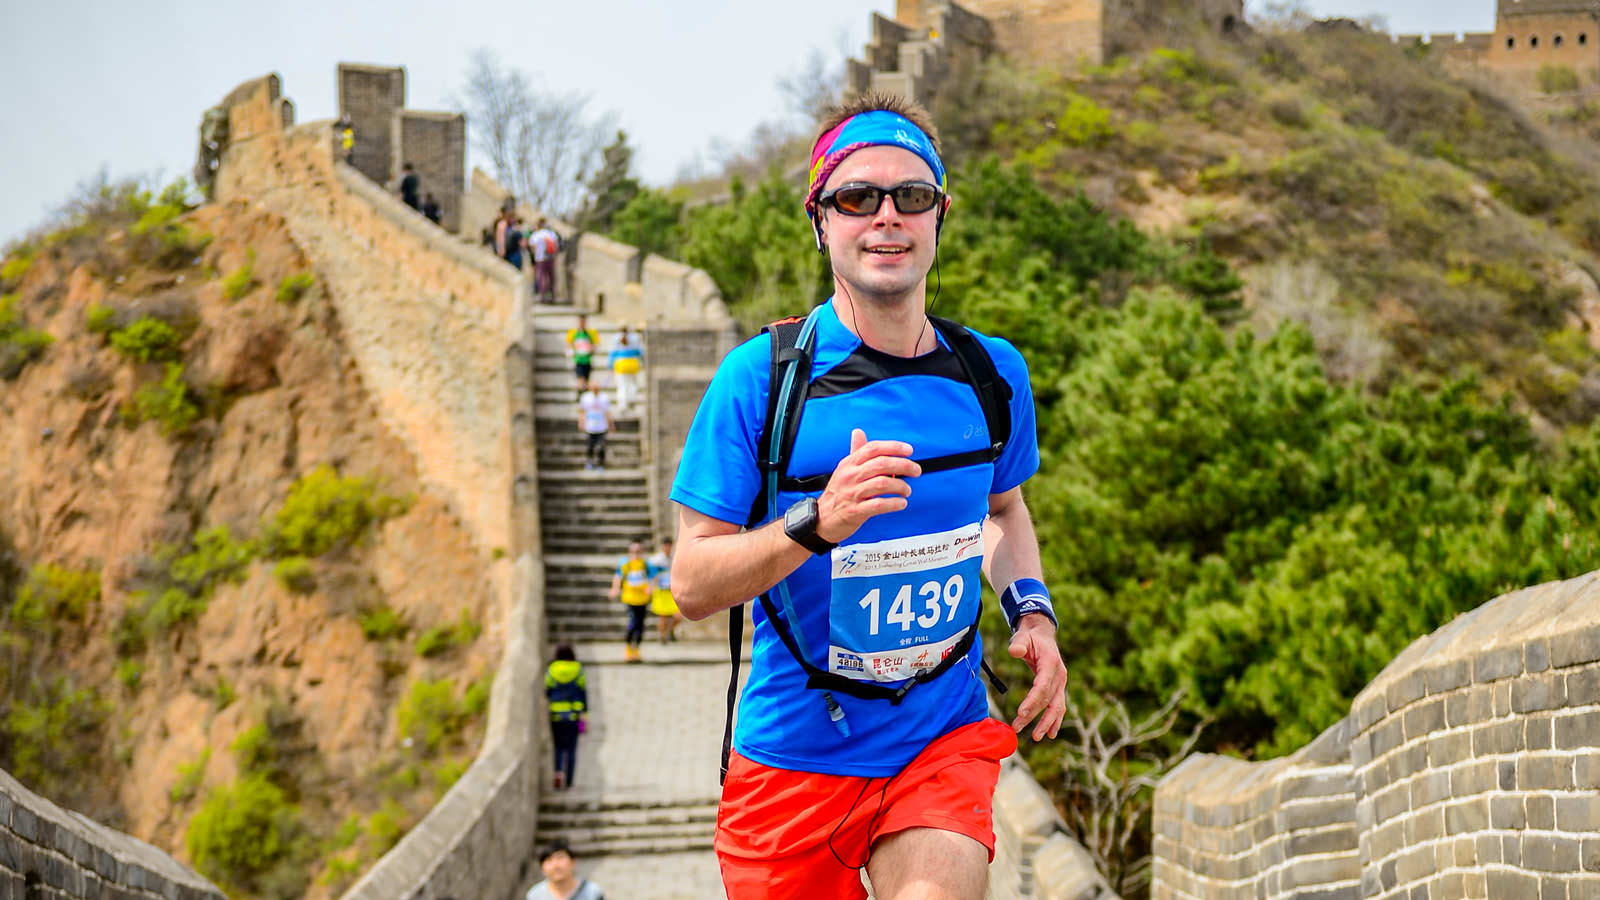 Jinshanling Great Wall Marathon Run The Great Wall